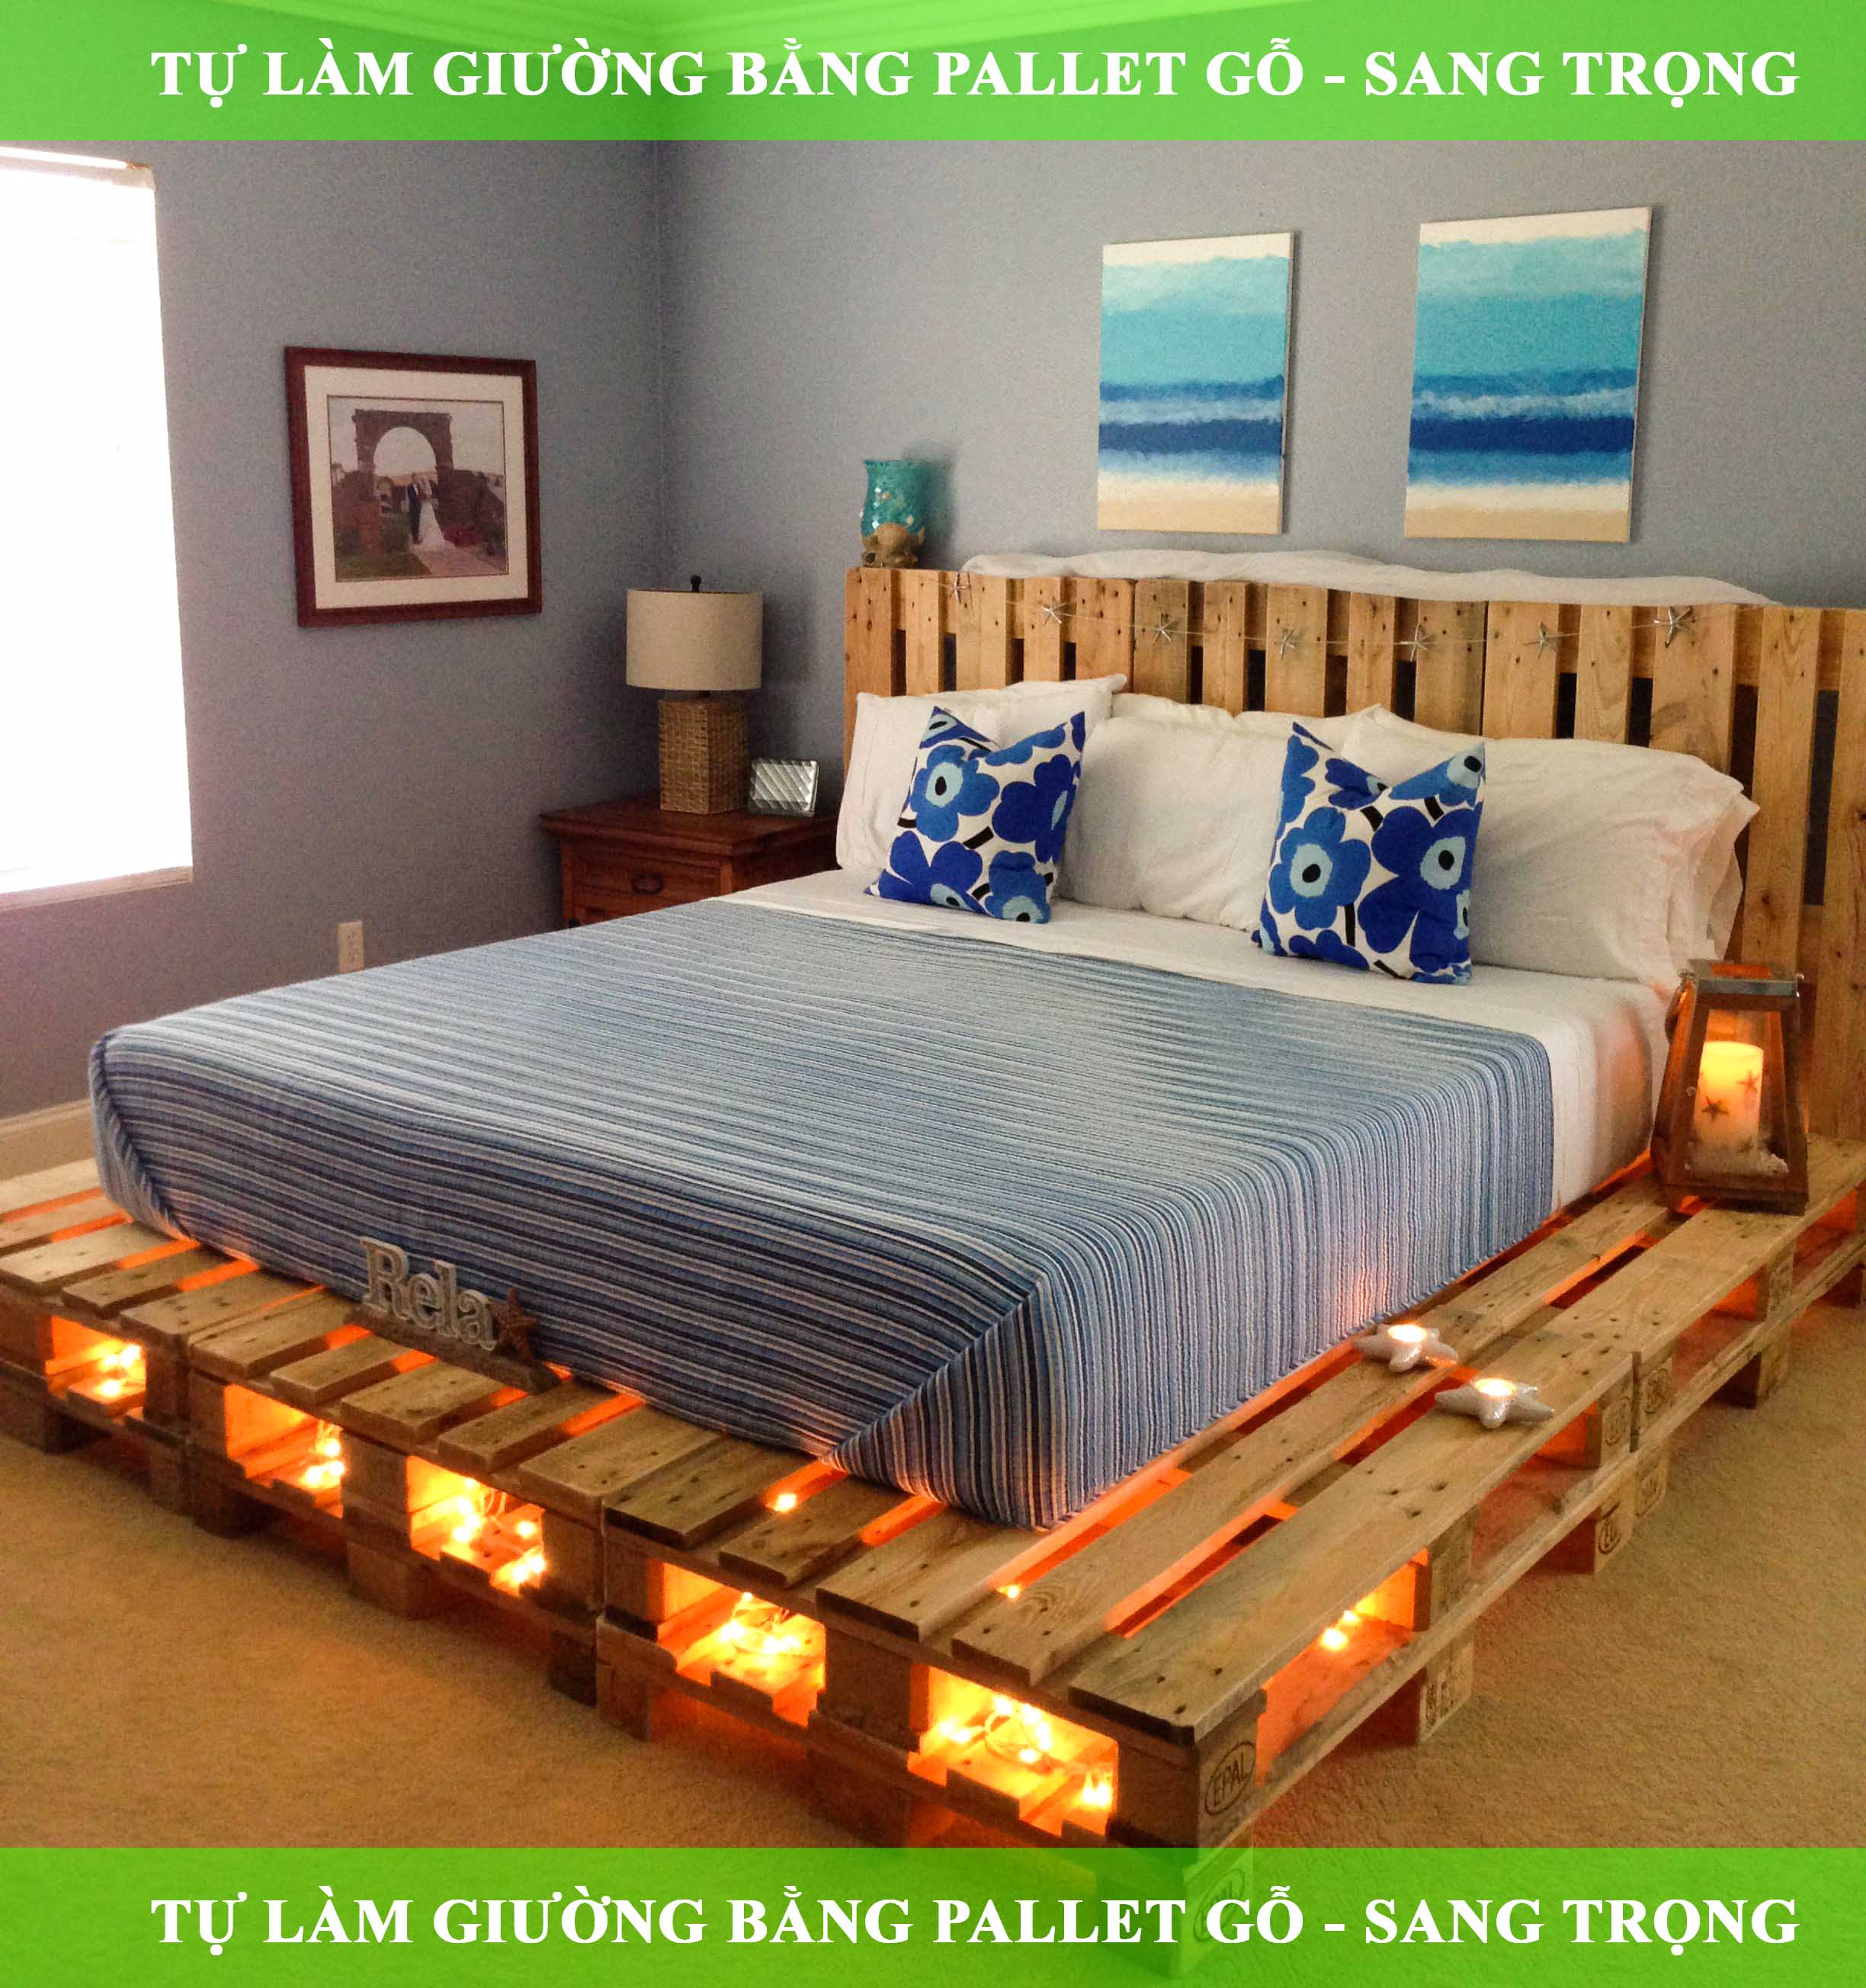 Sử dụng pallet gỗ làm giường ngủ là một cách tuyệt vời để tạo ra không gian nghỉ ngơi độc đáo và thân thiện với môi trường. Với sự kết hợp giữa pallet gỗ và những chiếc chăn trải trên giường, bạn sẽ có một căn phòng ngủ ấm áp và yên tĩnh để tránh xa những bộn bề của cuộc sống.